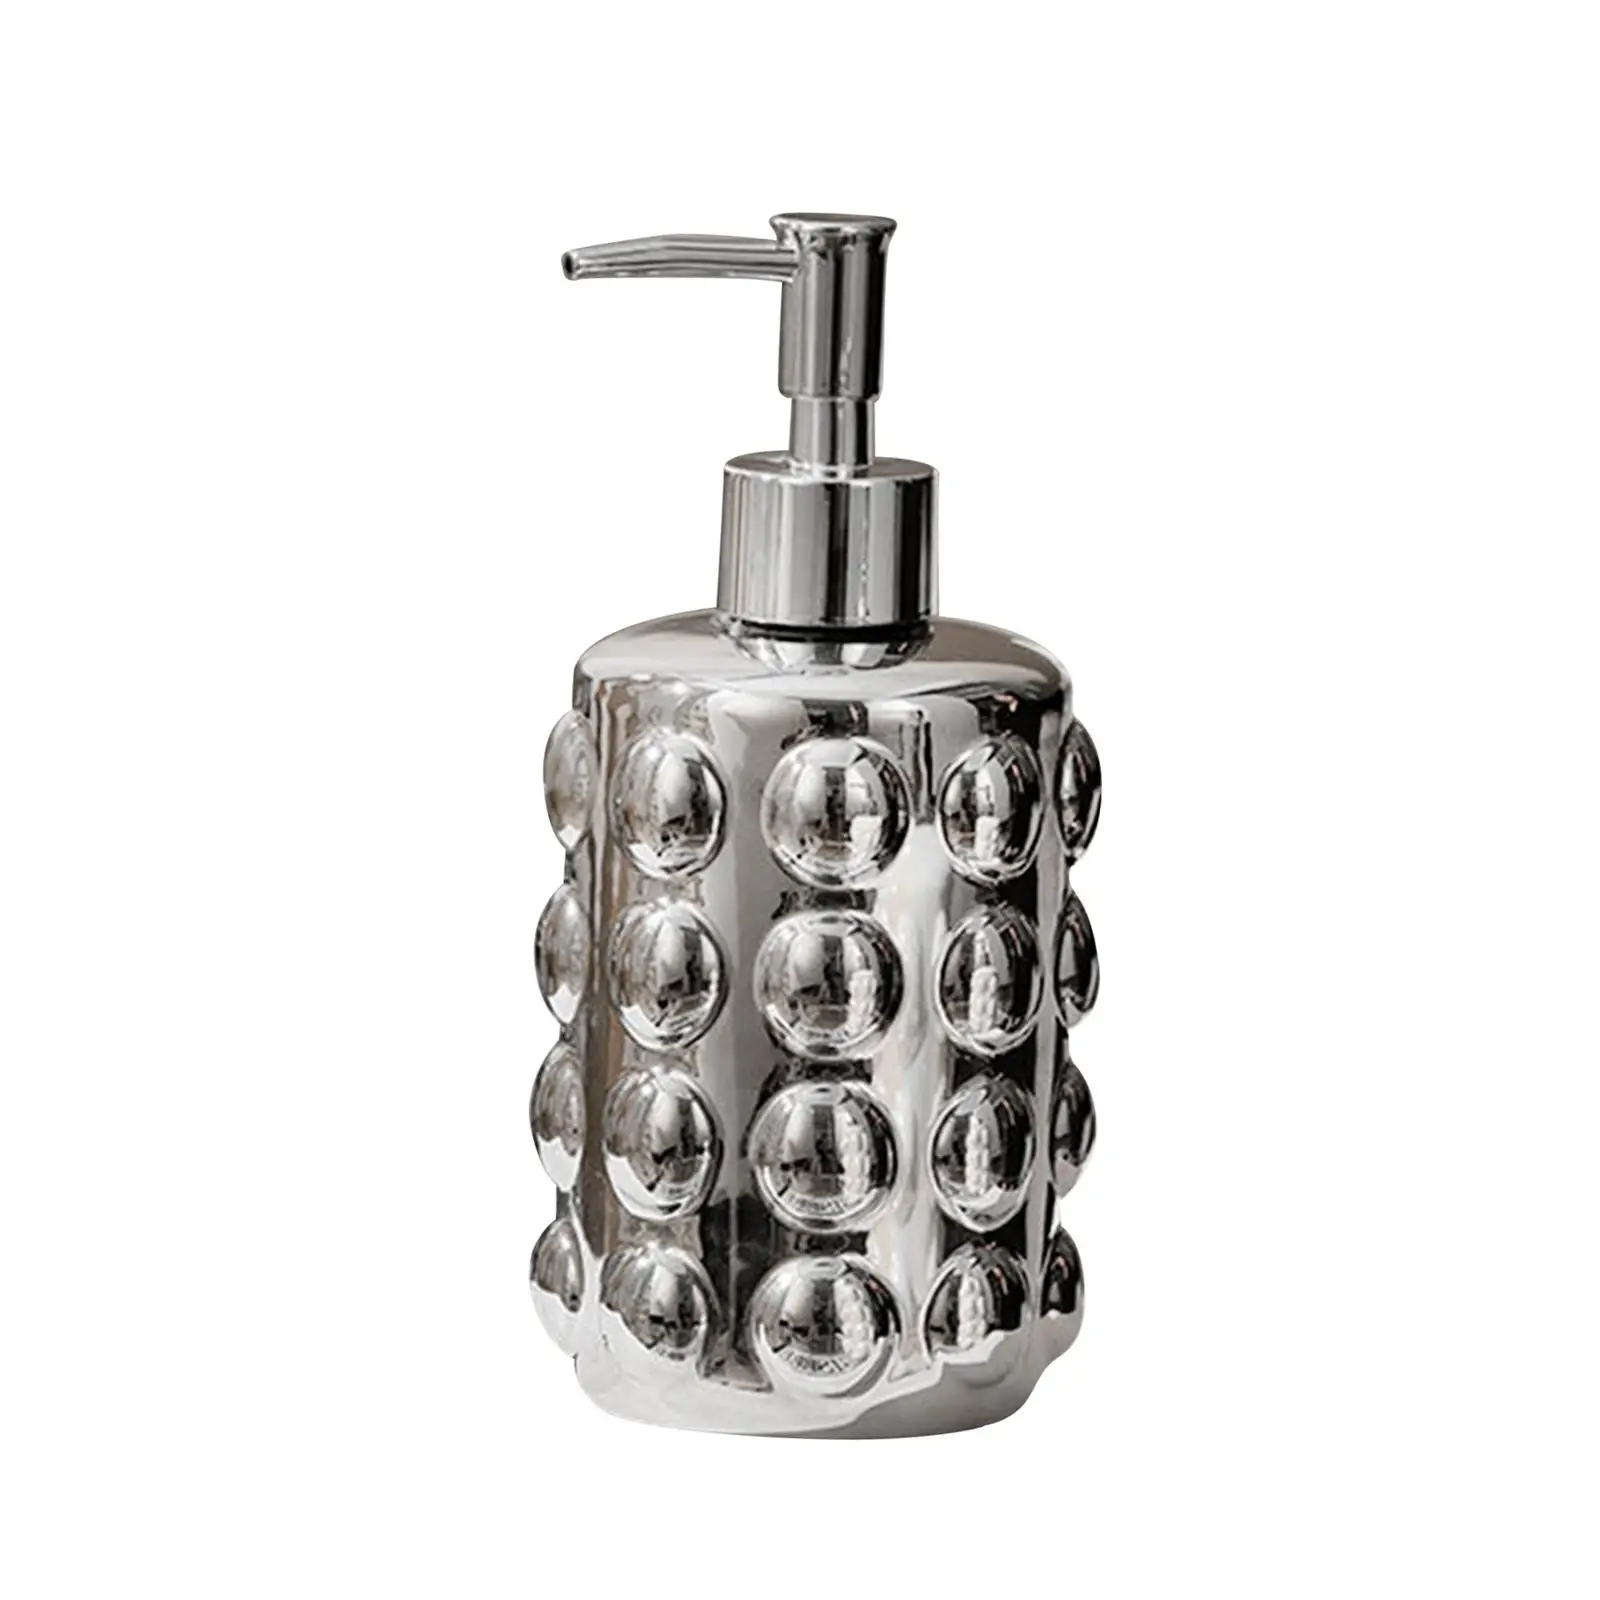 Ceramic Hand Lotion Bottle Pump Bottle 350ml Size 8cmx12cm with Push Pump